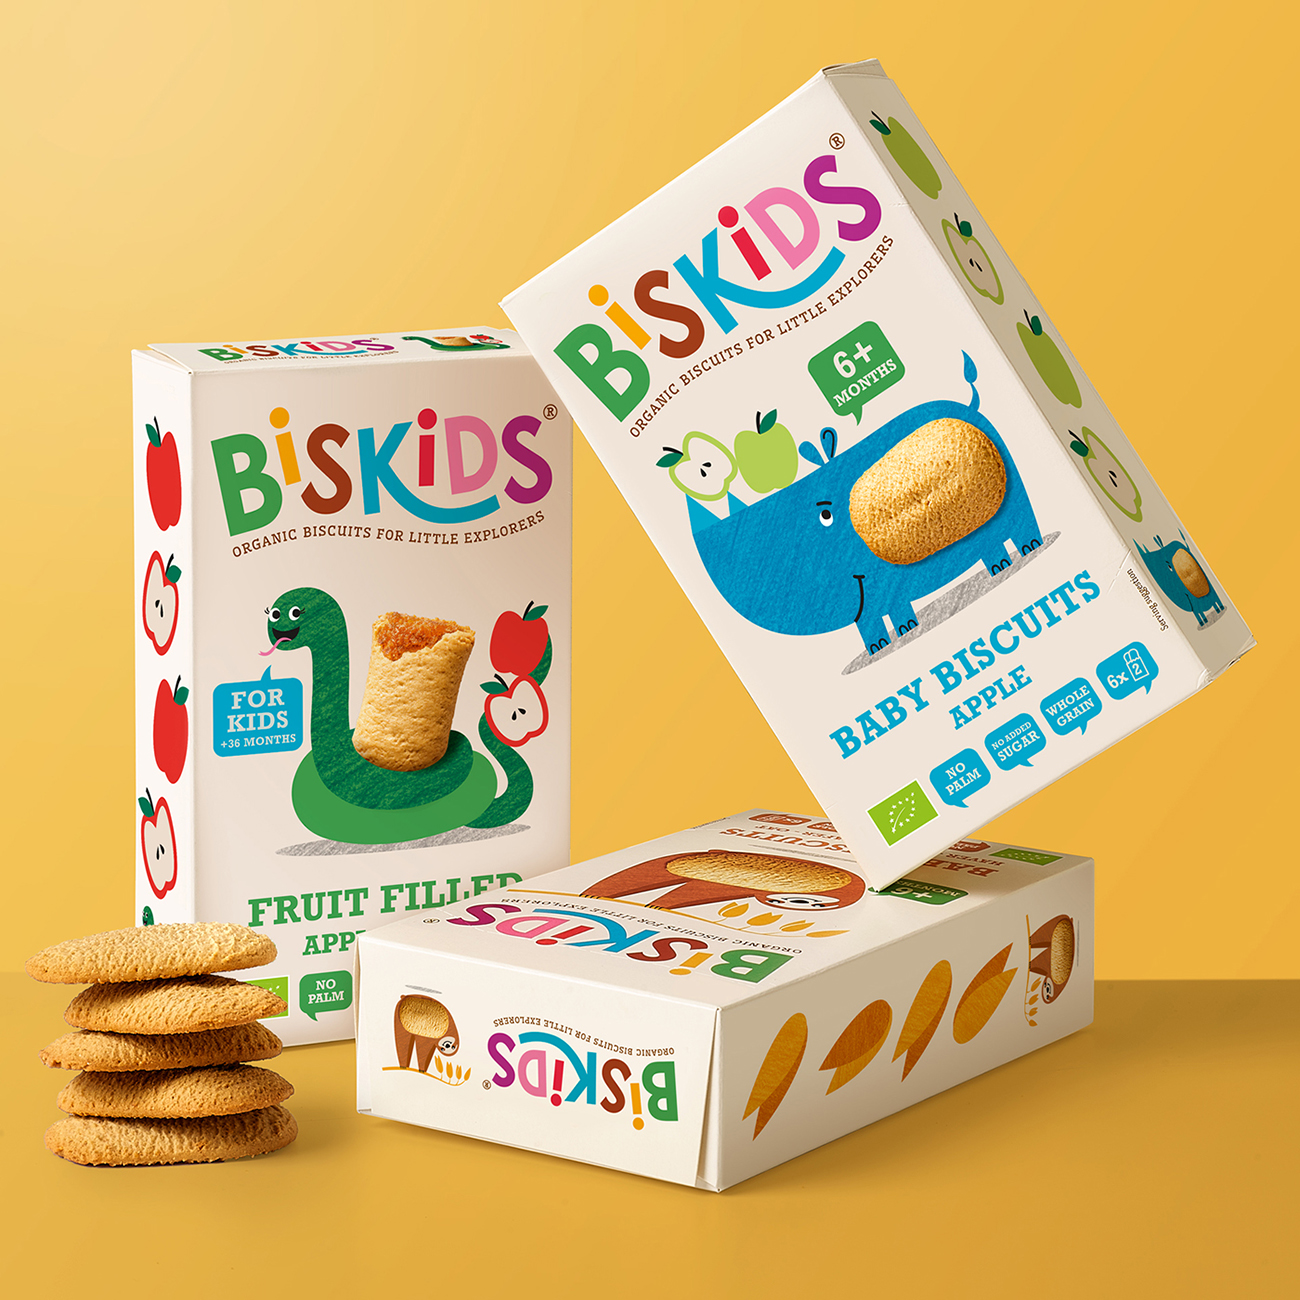 Quatre Mains Packaging Design Helps Smart Kids to Choose Biskids